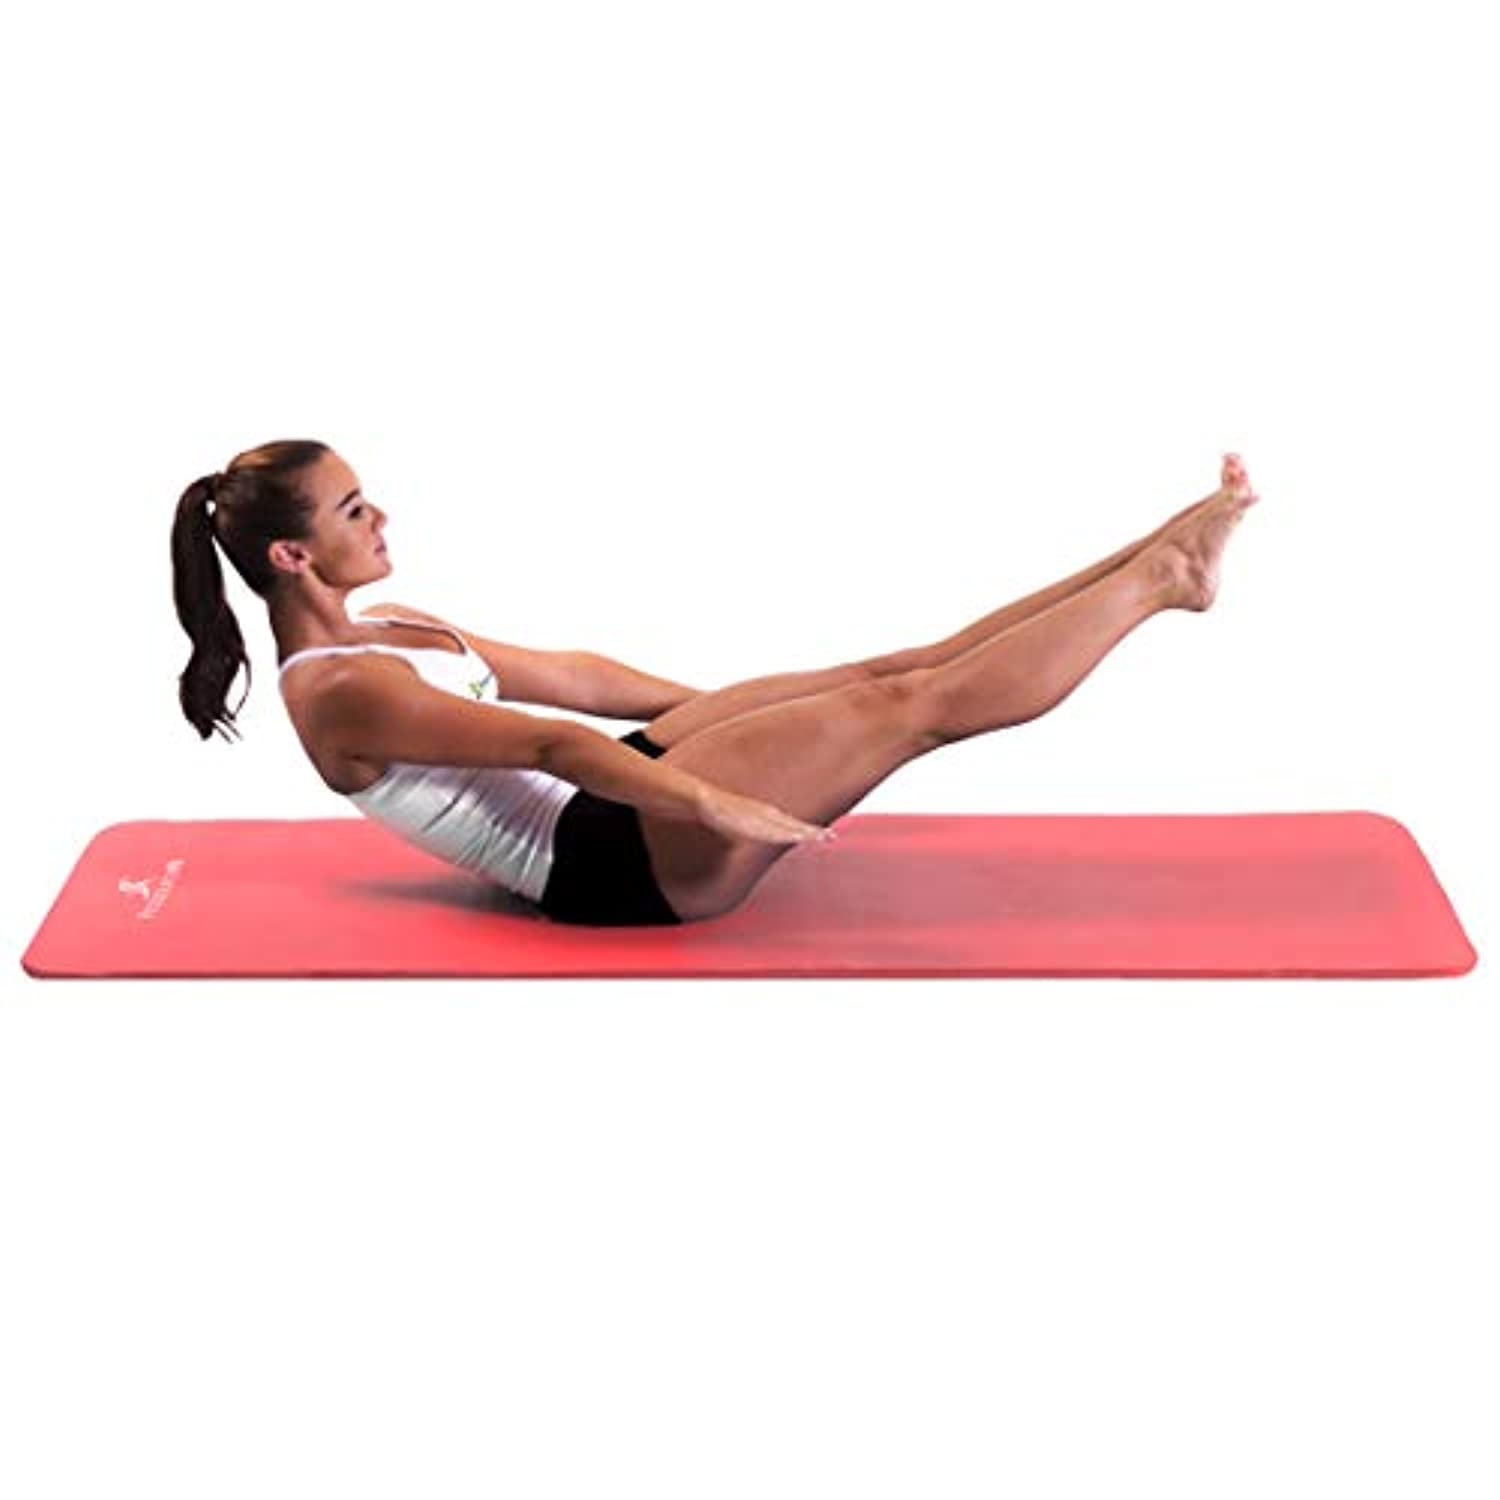 Así es la esterilla definitiva para yoga o pilates: gruesa, elástica y  antideslizante - Showroom